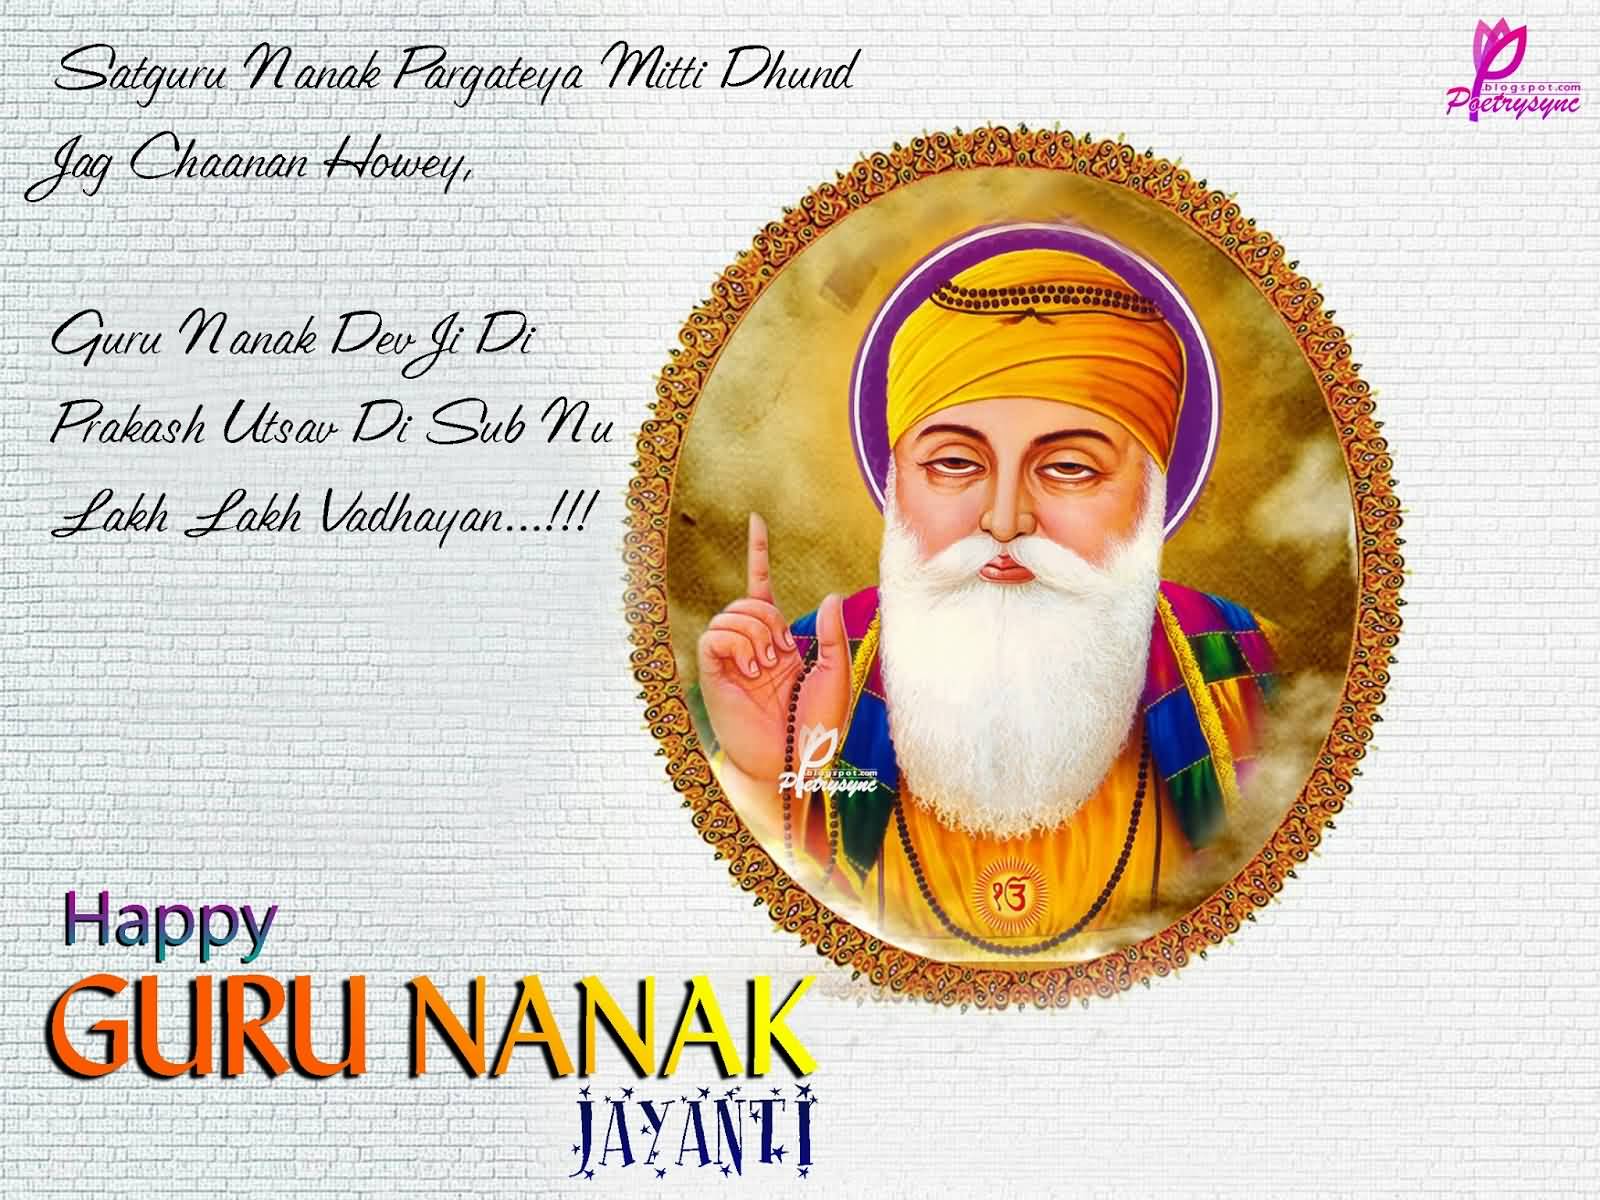 Guru Nanak Dev Ji Di Prakash Utsav Di Sub Nu Lakh Lakh - Guru Nanak Jayanti  550 - 1600x1200 Wallpaper 